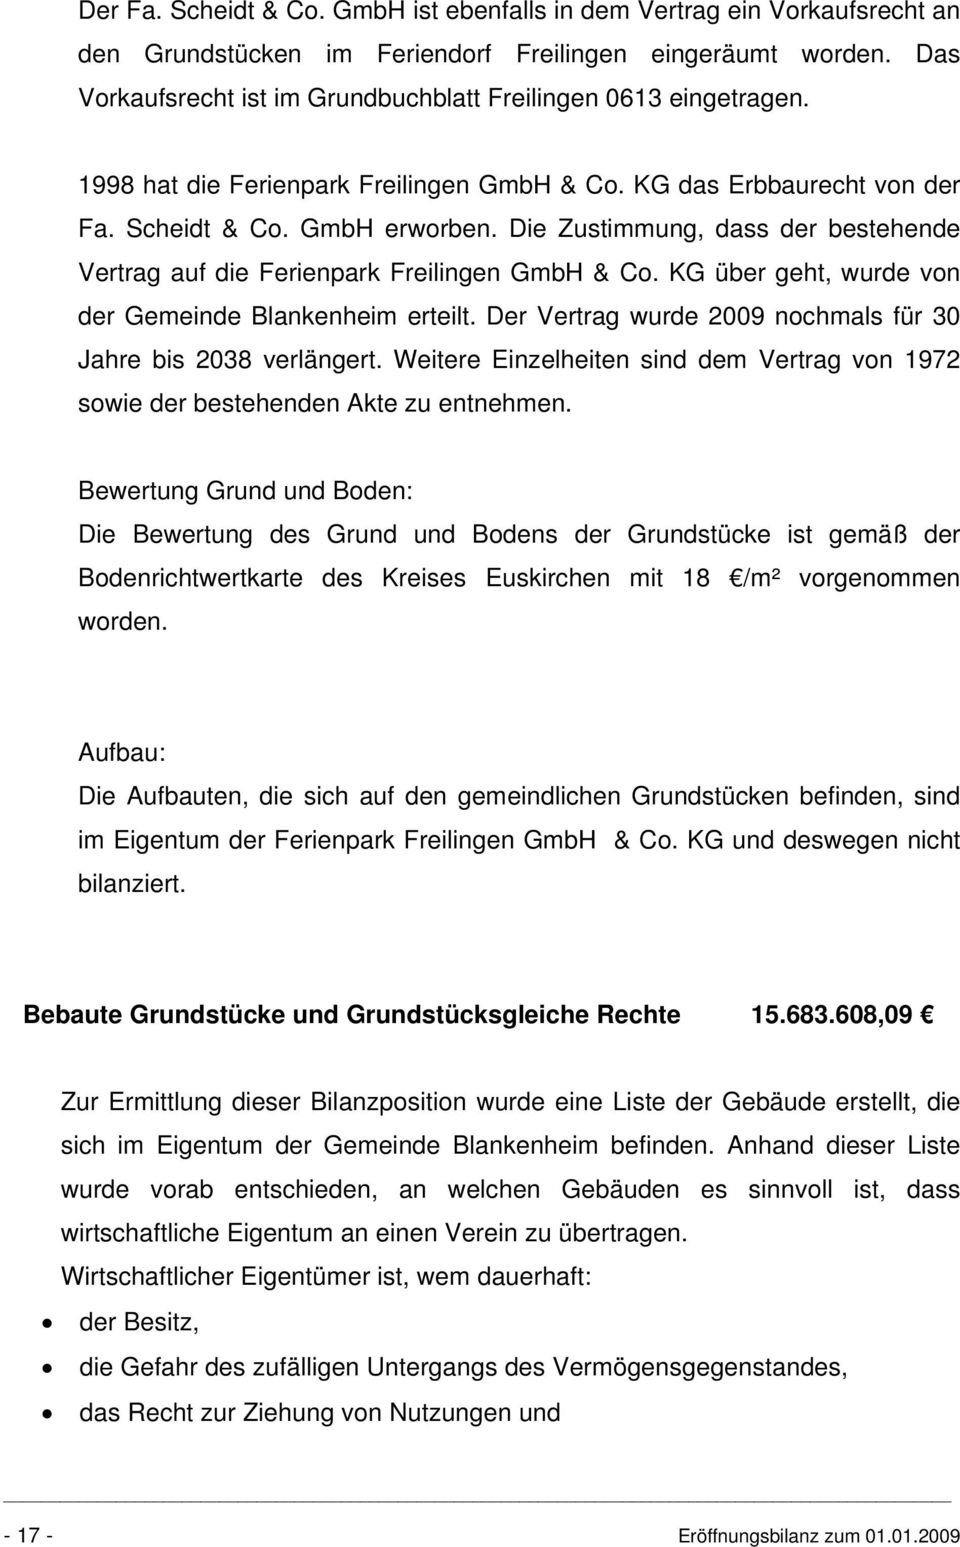 Die Zustimmung, dass der bestehende Vertrag auf die Ferienpark Freilingen GmbH & Co. KG über geht, wurde von der Gemeinde Blankenheim erteilt.